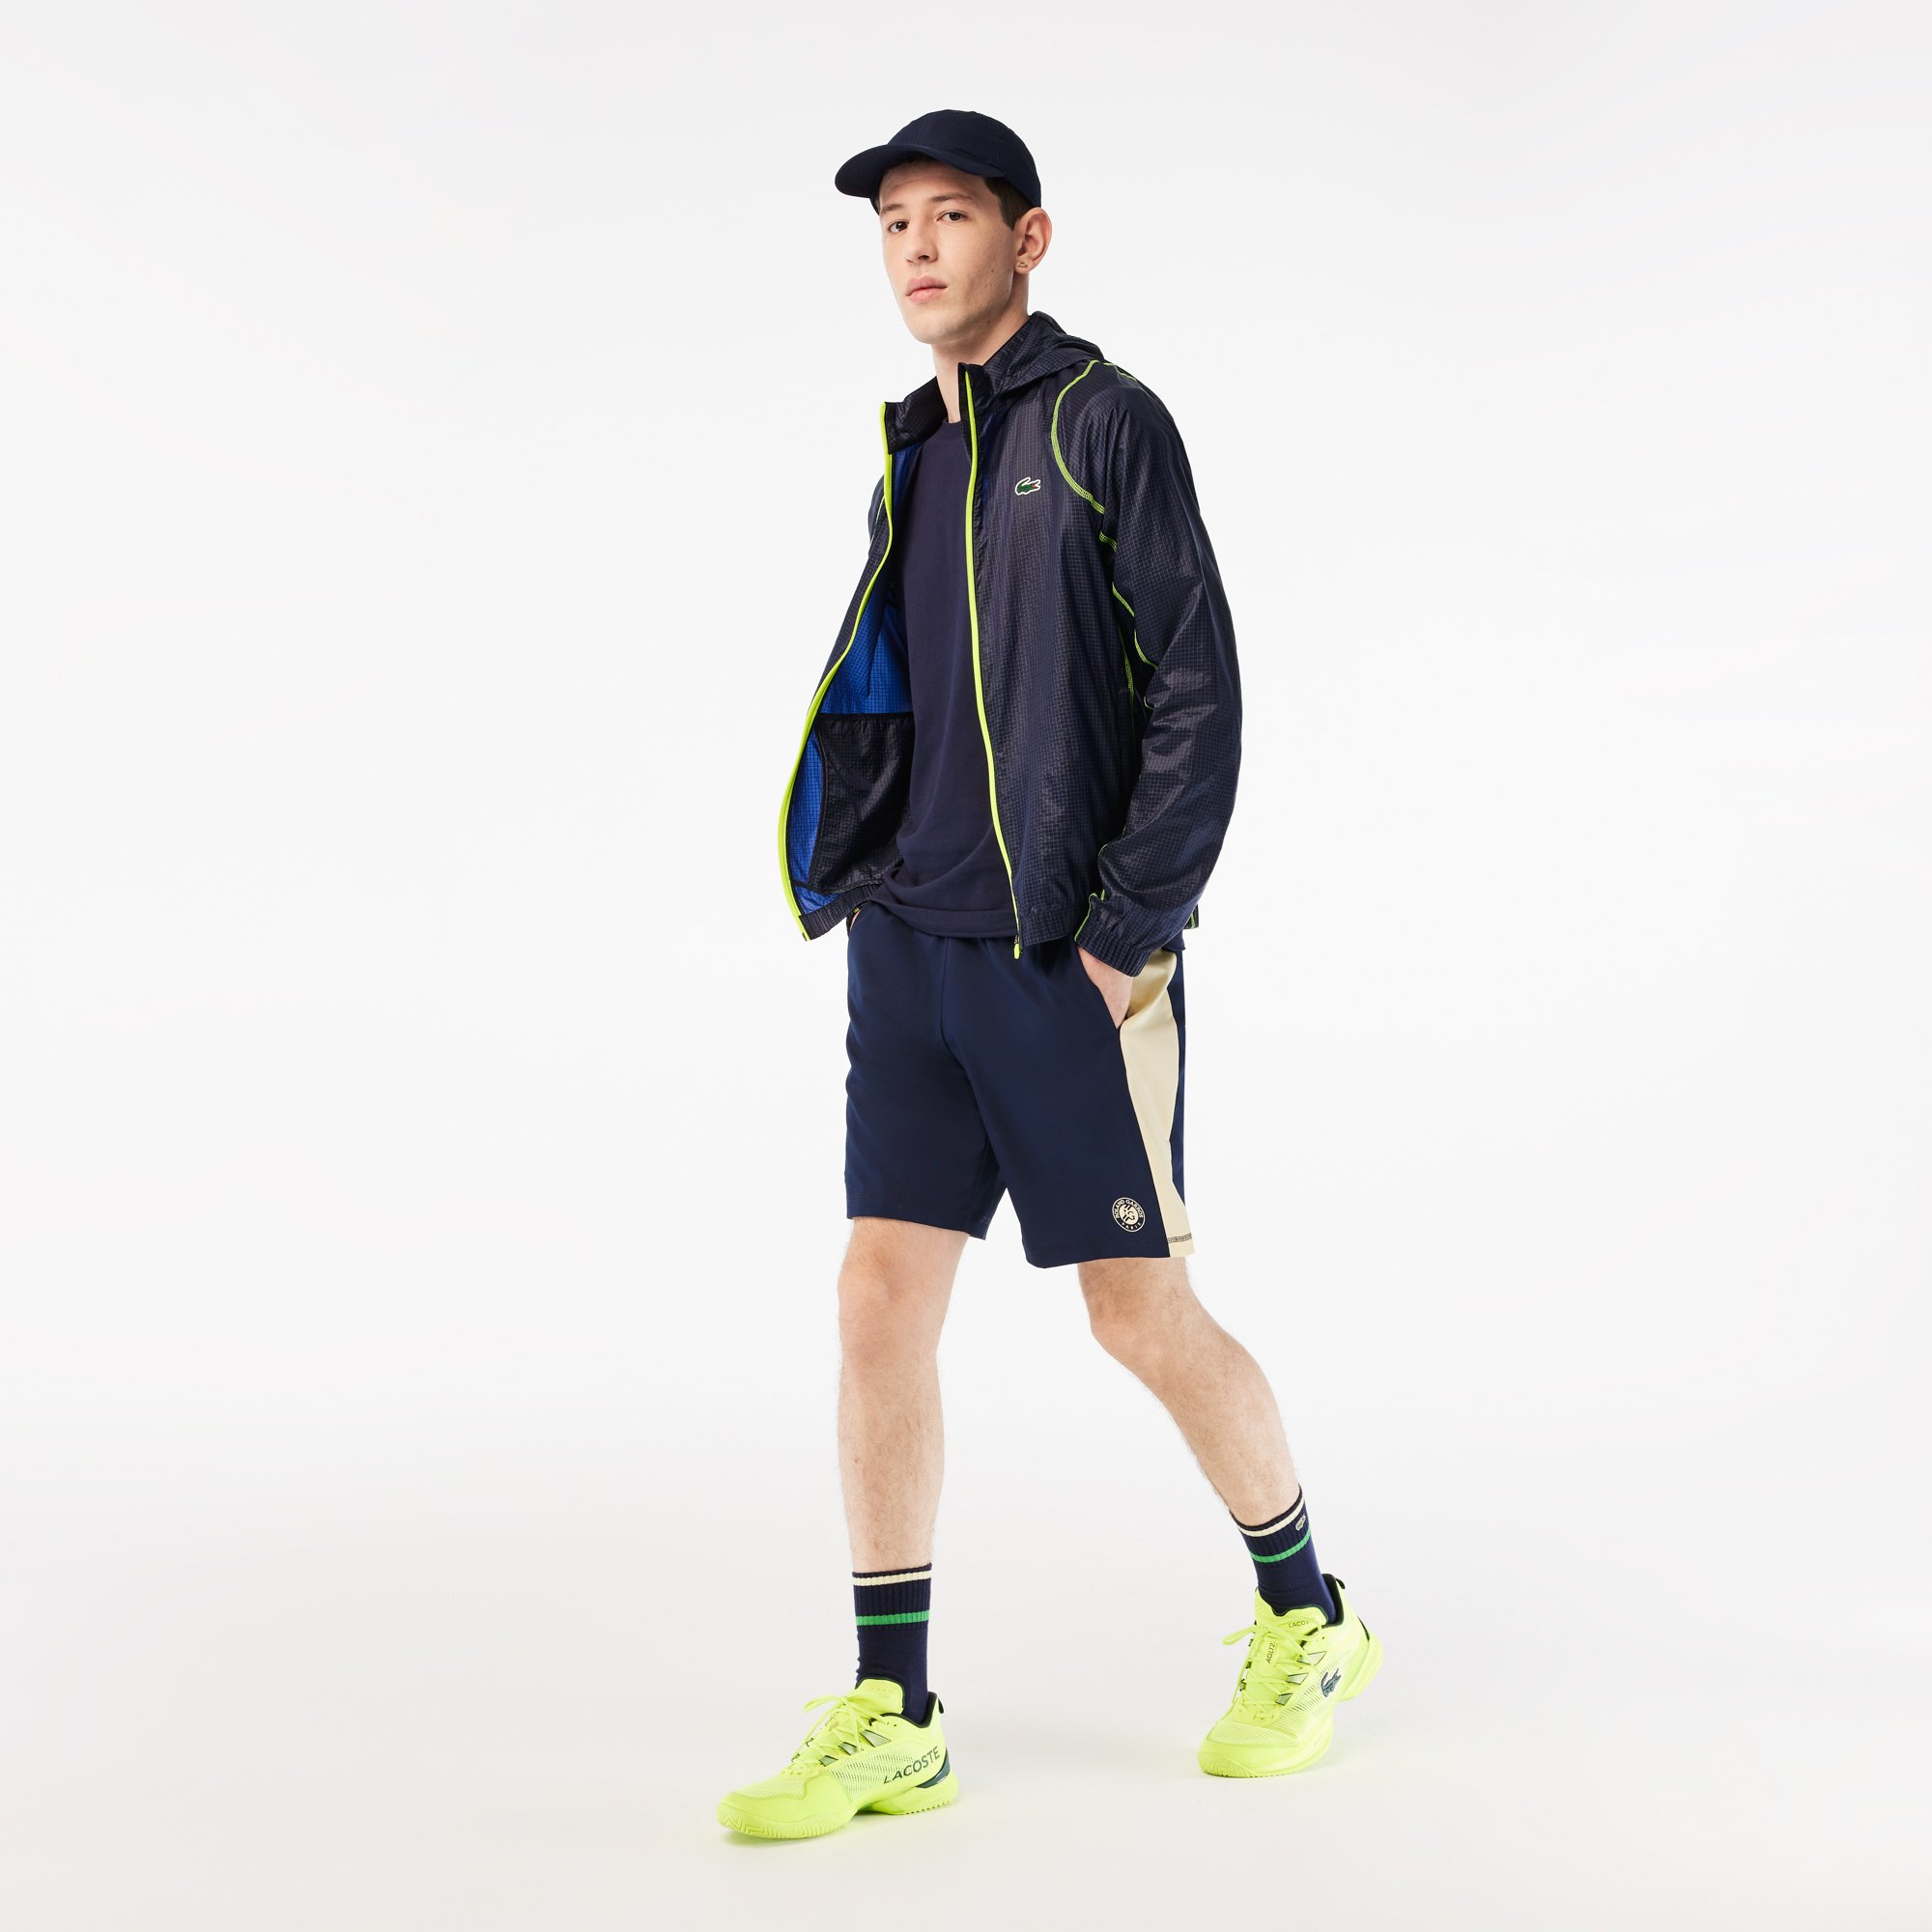 eksistens vinden er stærk krans Lacoste Men's Ball Boys Short for Roland Garros - Navy Beige |  Roland-Garros Store